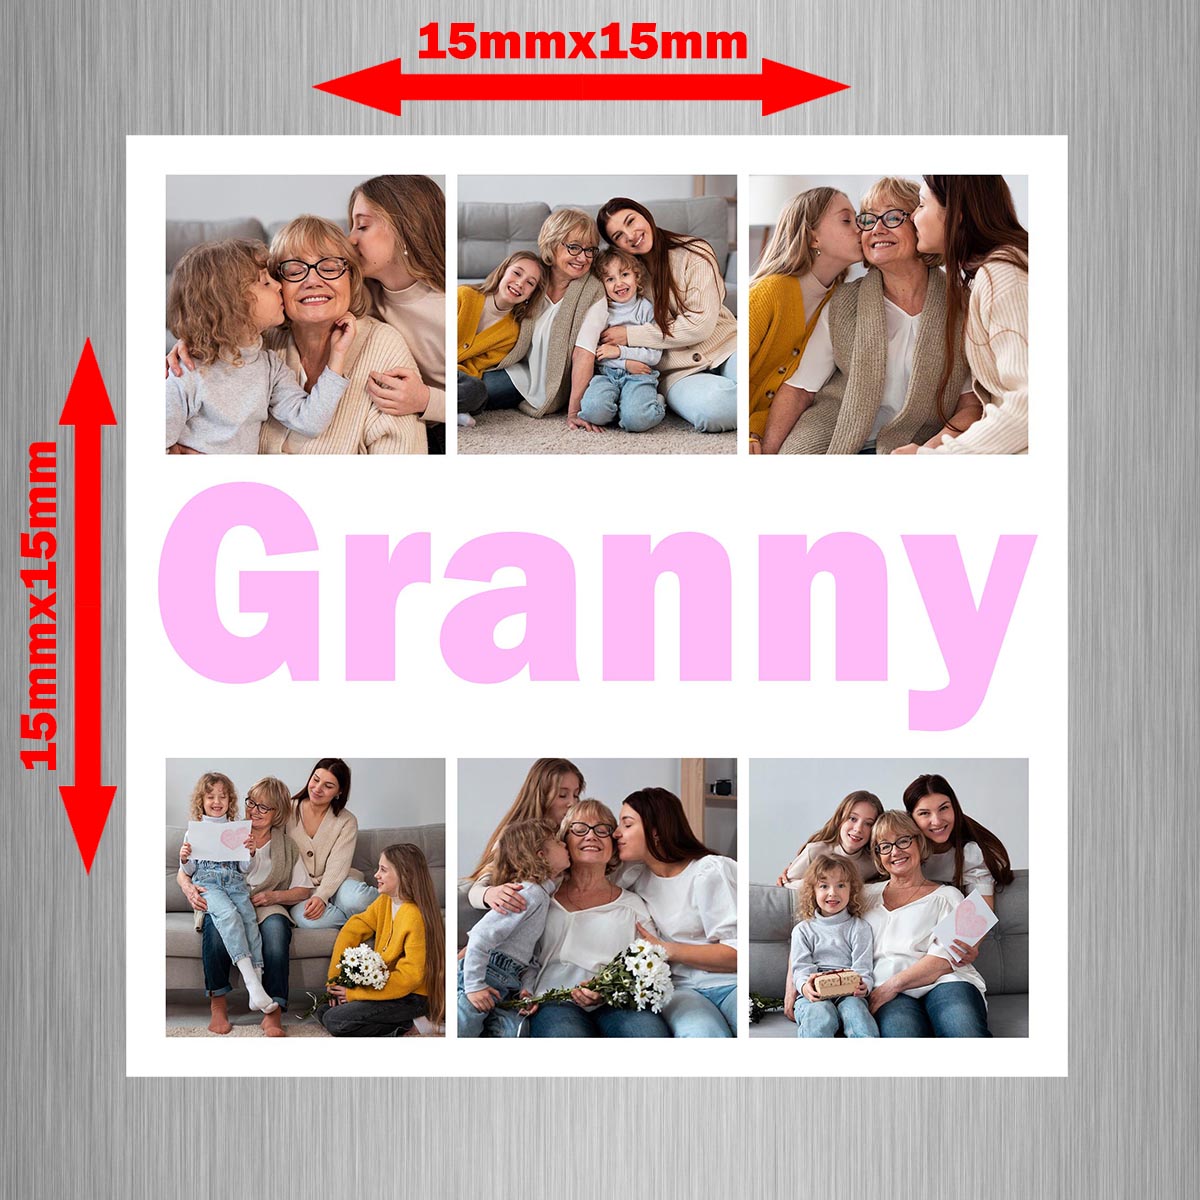 Granny Photo Fridge Magnet (Pack of 2)